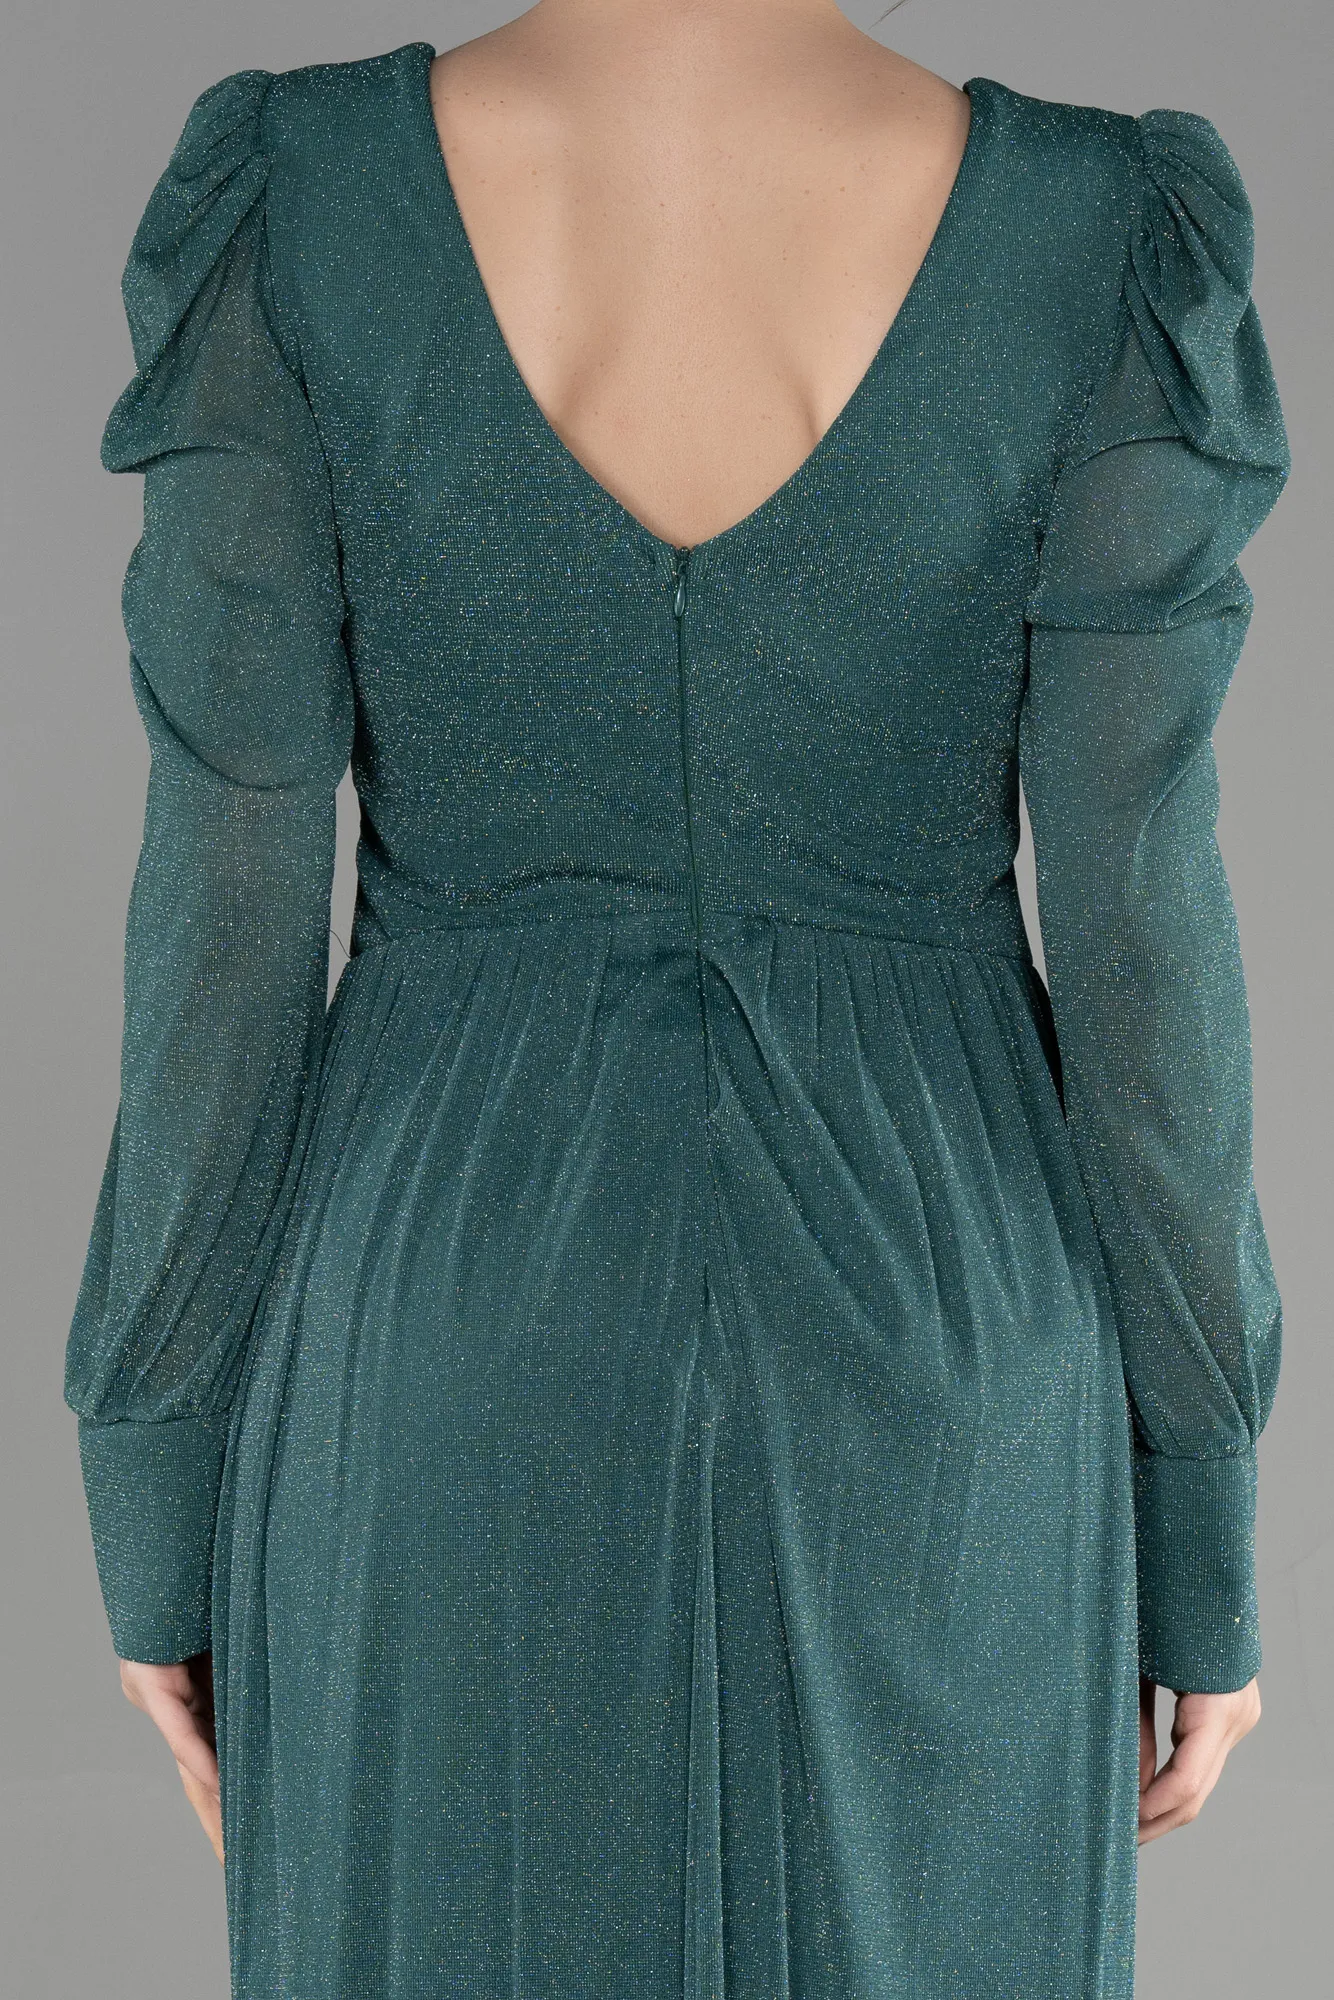 Emerald Green-Long Evening Dress ABU3103